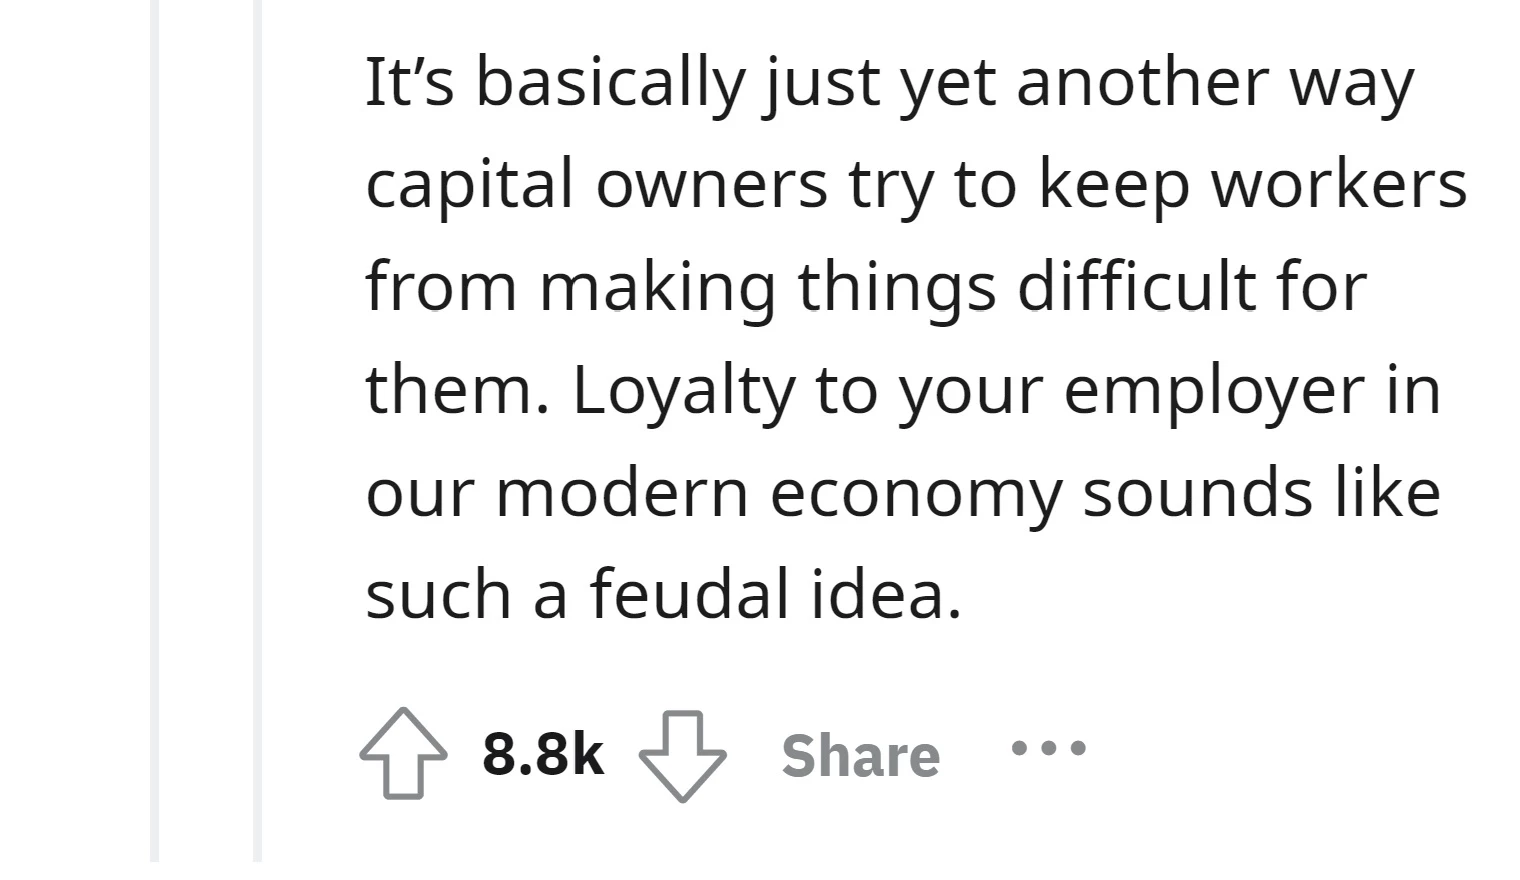 It is a feudal idea